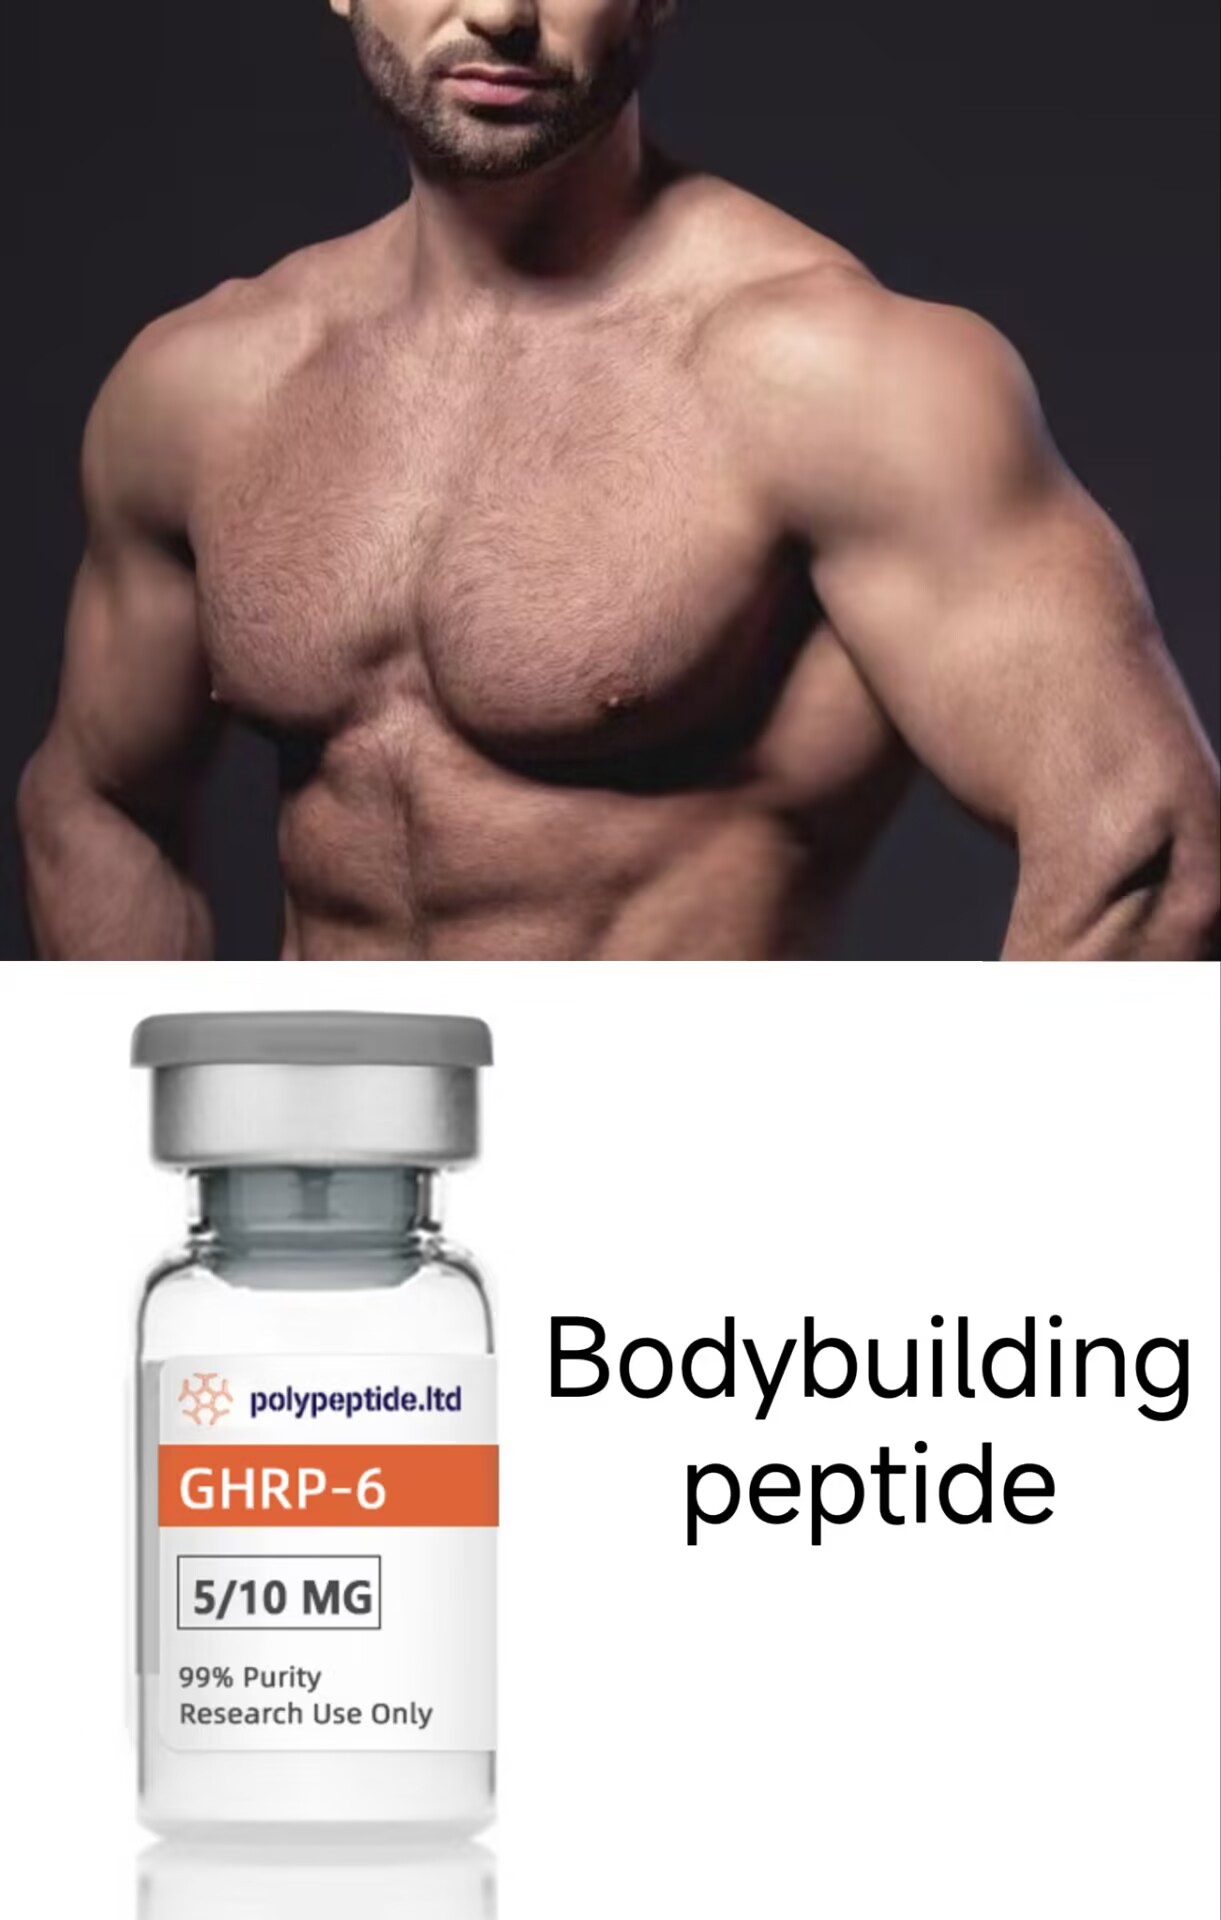 GHRP-6 Popular Bodybuilding Peptide Supplier-Polypeptide.ltd